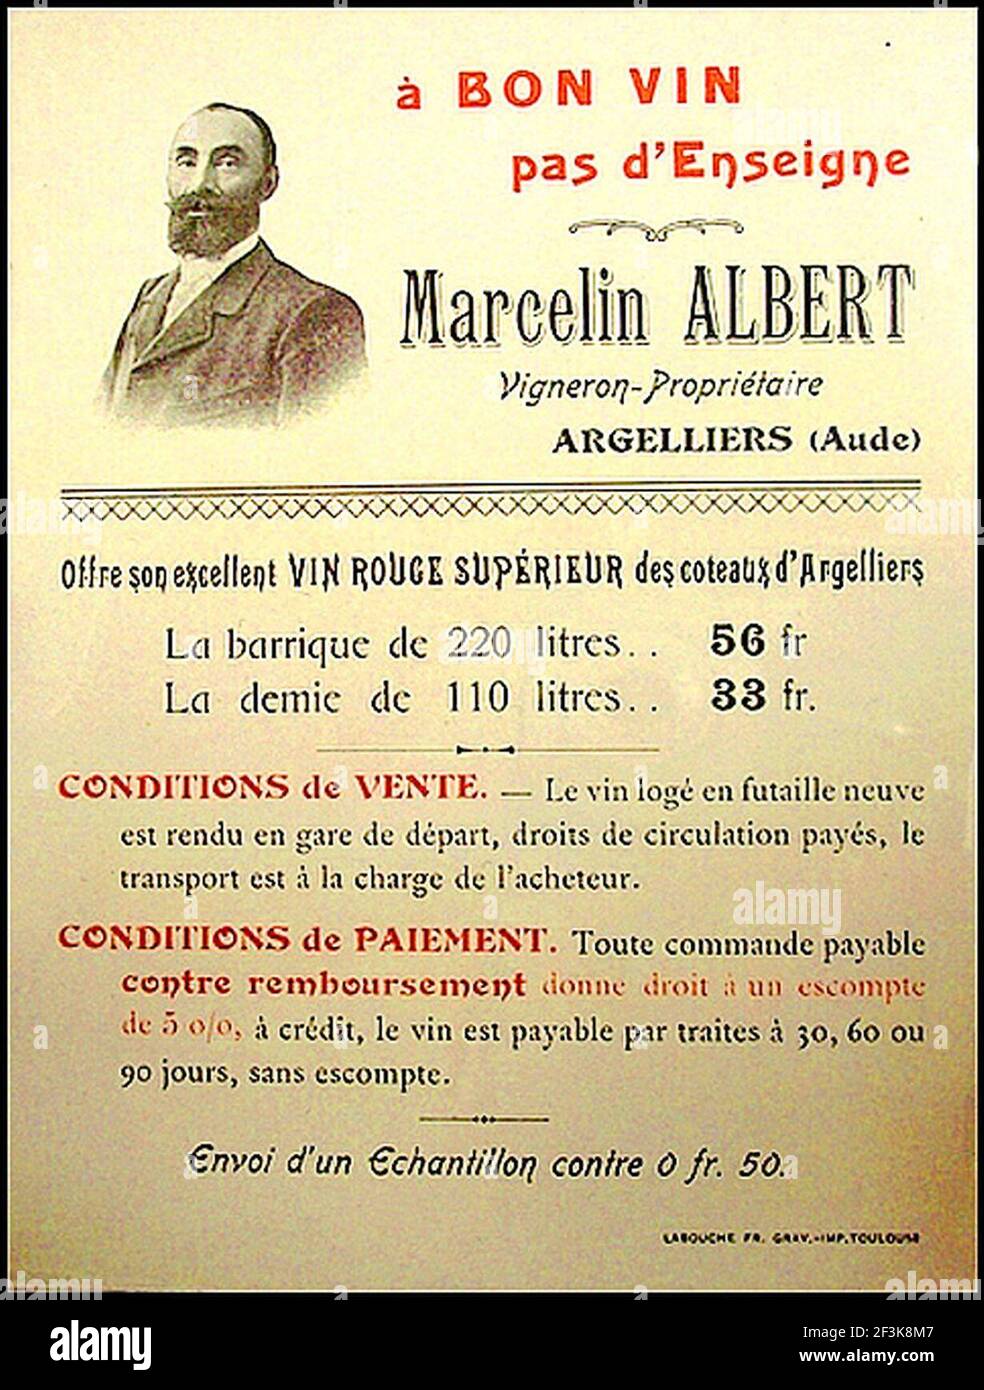 Publicité pour les vins de Marcelin Albert Archives municipales de Narbonne. Stock Photo